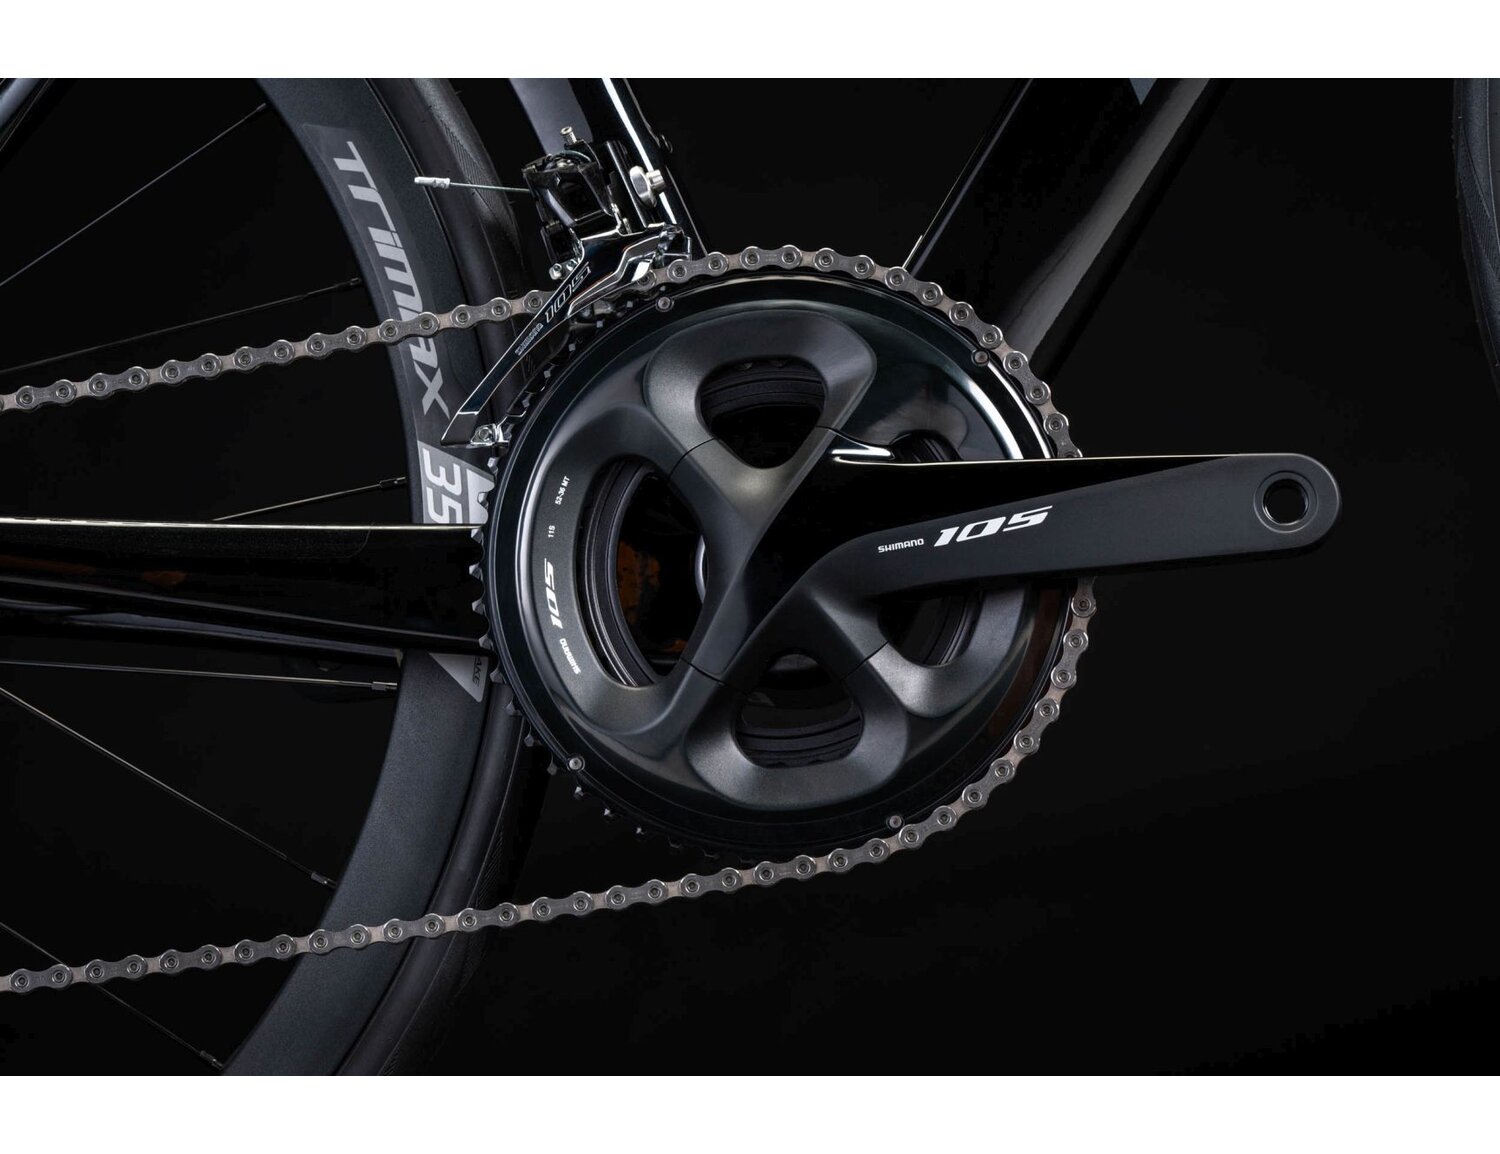  Mechanizm korbowy oraz przednia przerzutka Shimano 105 R7000 w rowerze szosowym KROSS Vento DSC 8.0 